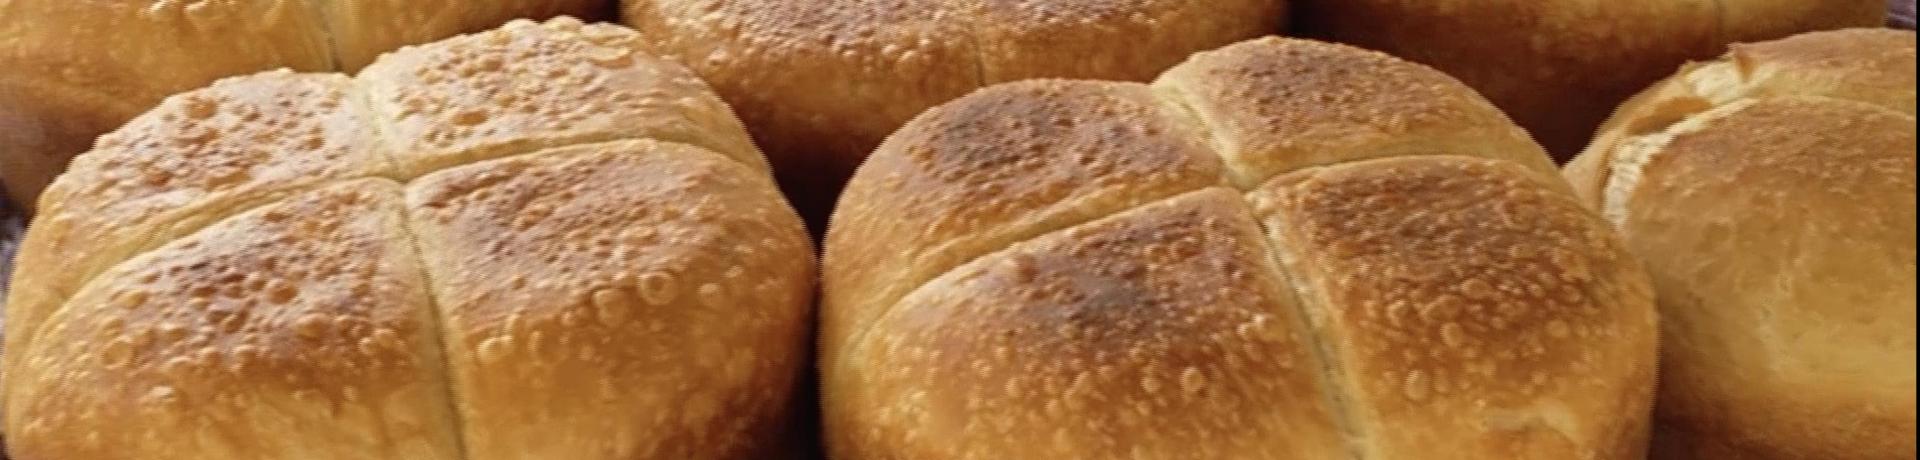 Le pain, un patrimoine partagé